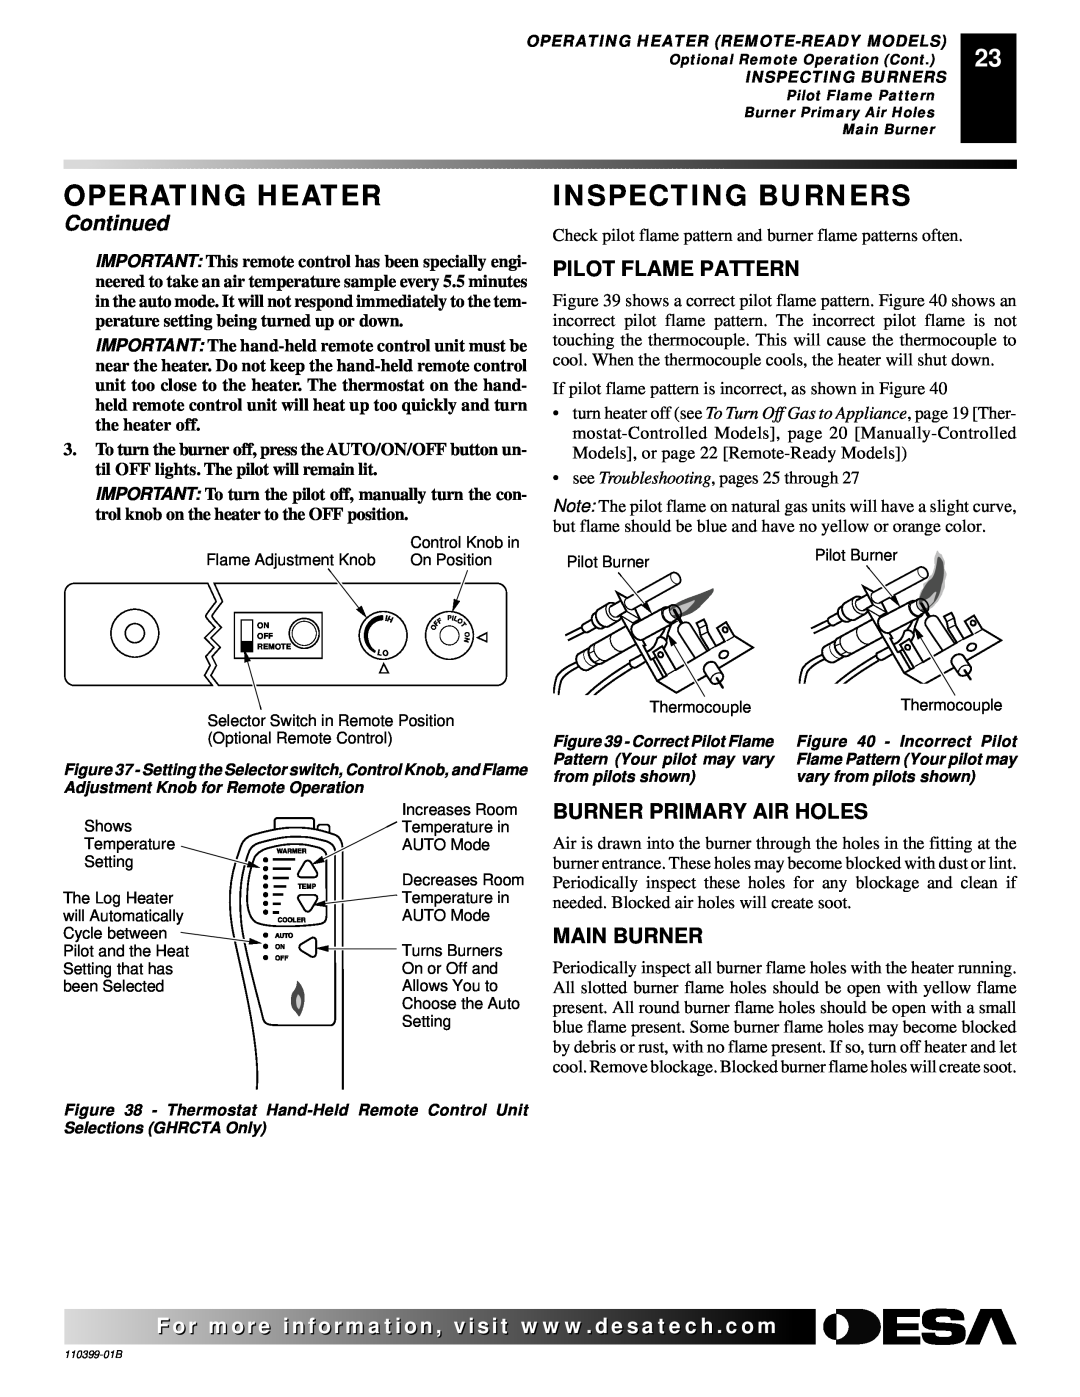 Desa LAME-MAX Golden Oak Inspecting Burners, Pilot Flame Pattern, Burner Primary Air Holes, Main Burner, Operating Heater 